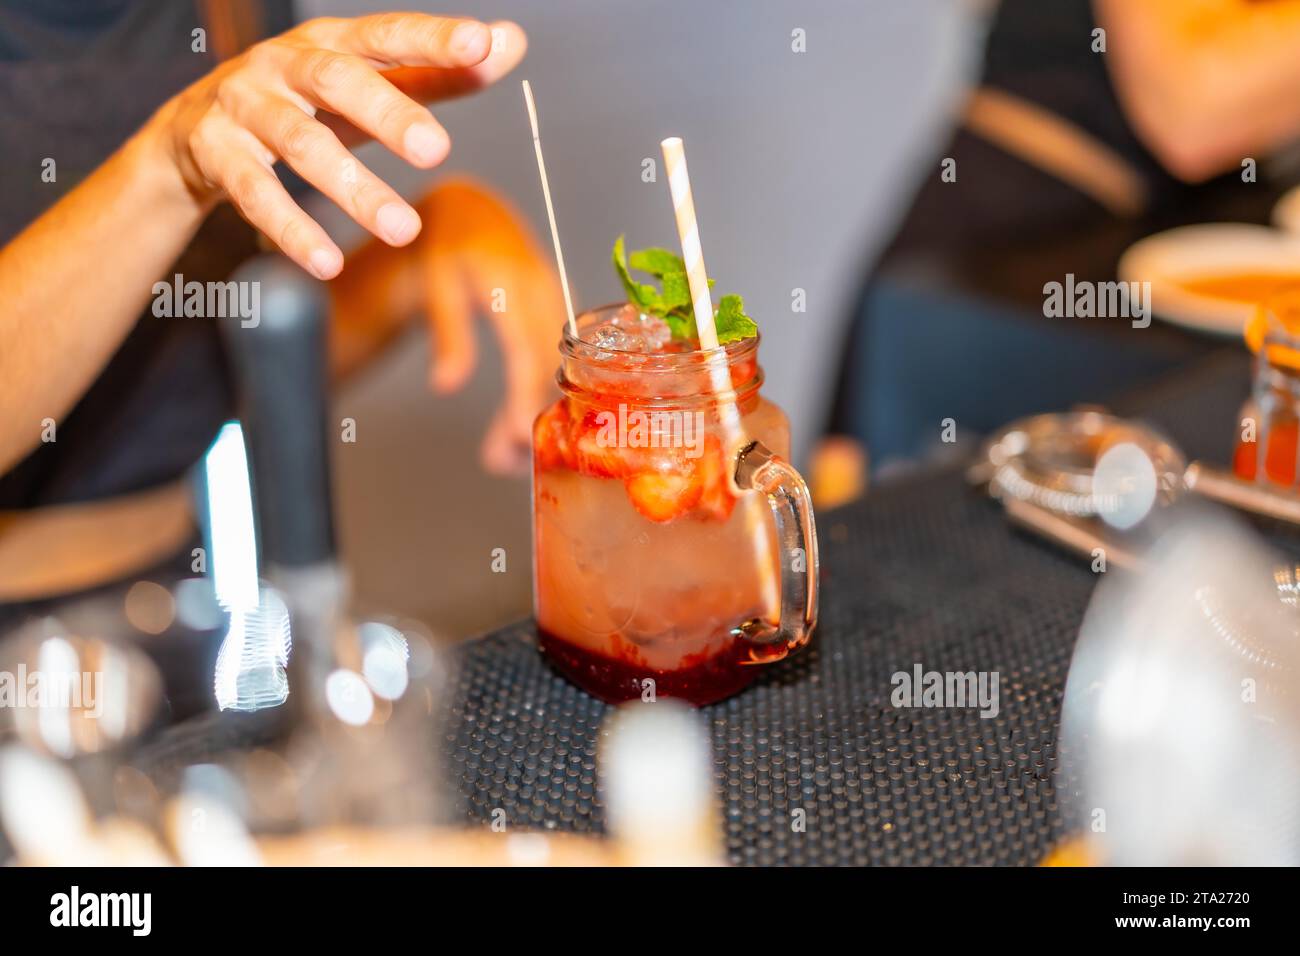 Nahaufnahme eines roten Mezcal-Margarita-Cocktails, garniert mit Pfefferminz in der Bar, während der Barkeeper ihn zubereitete Stockfoto